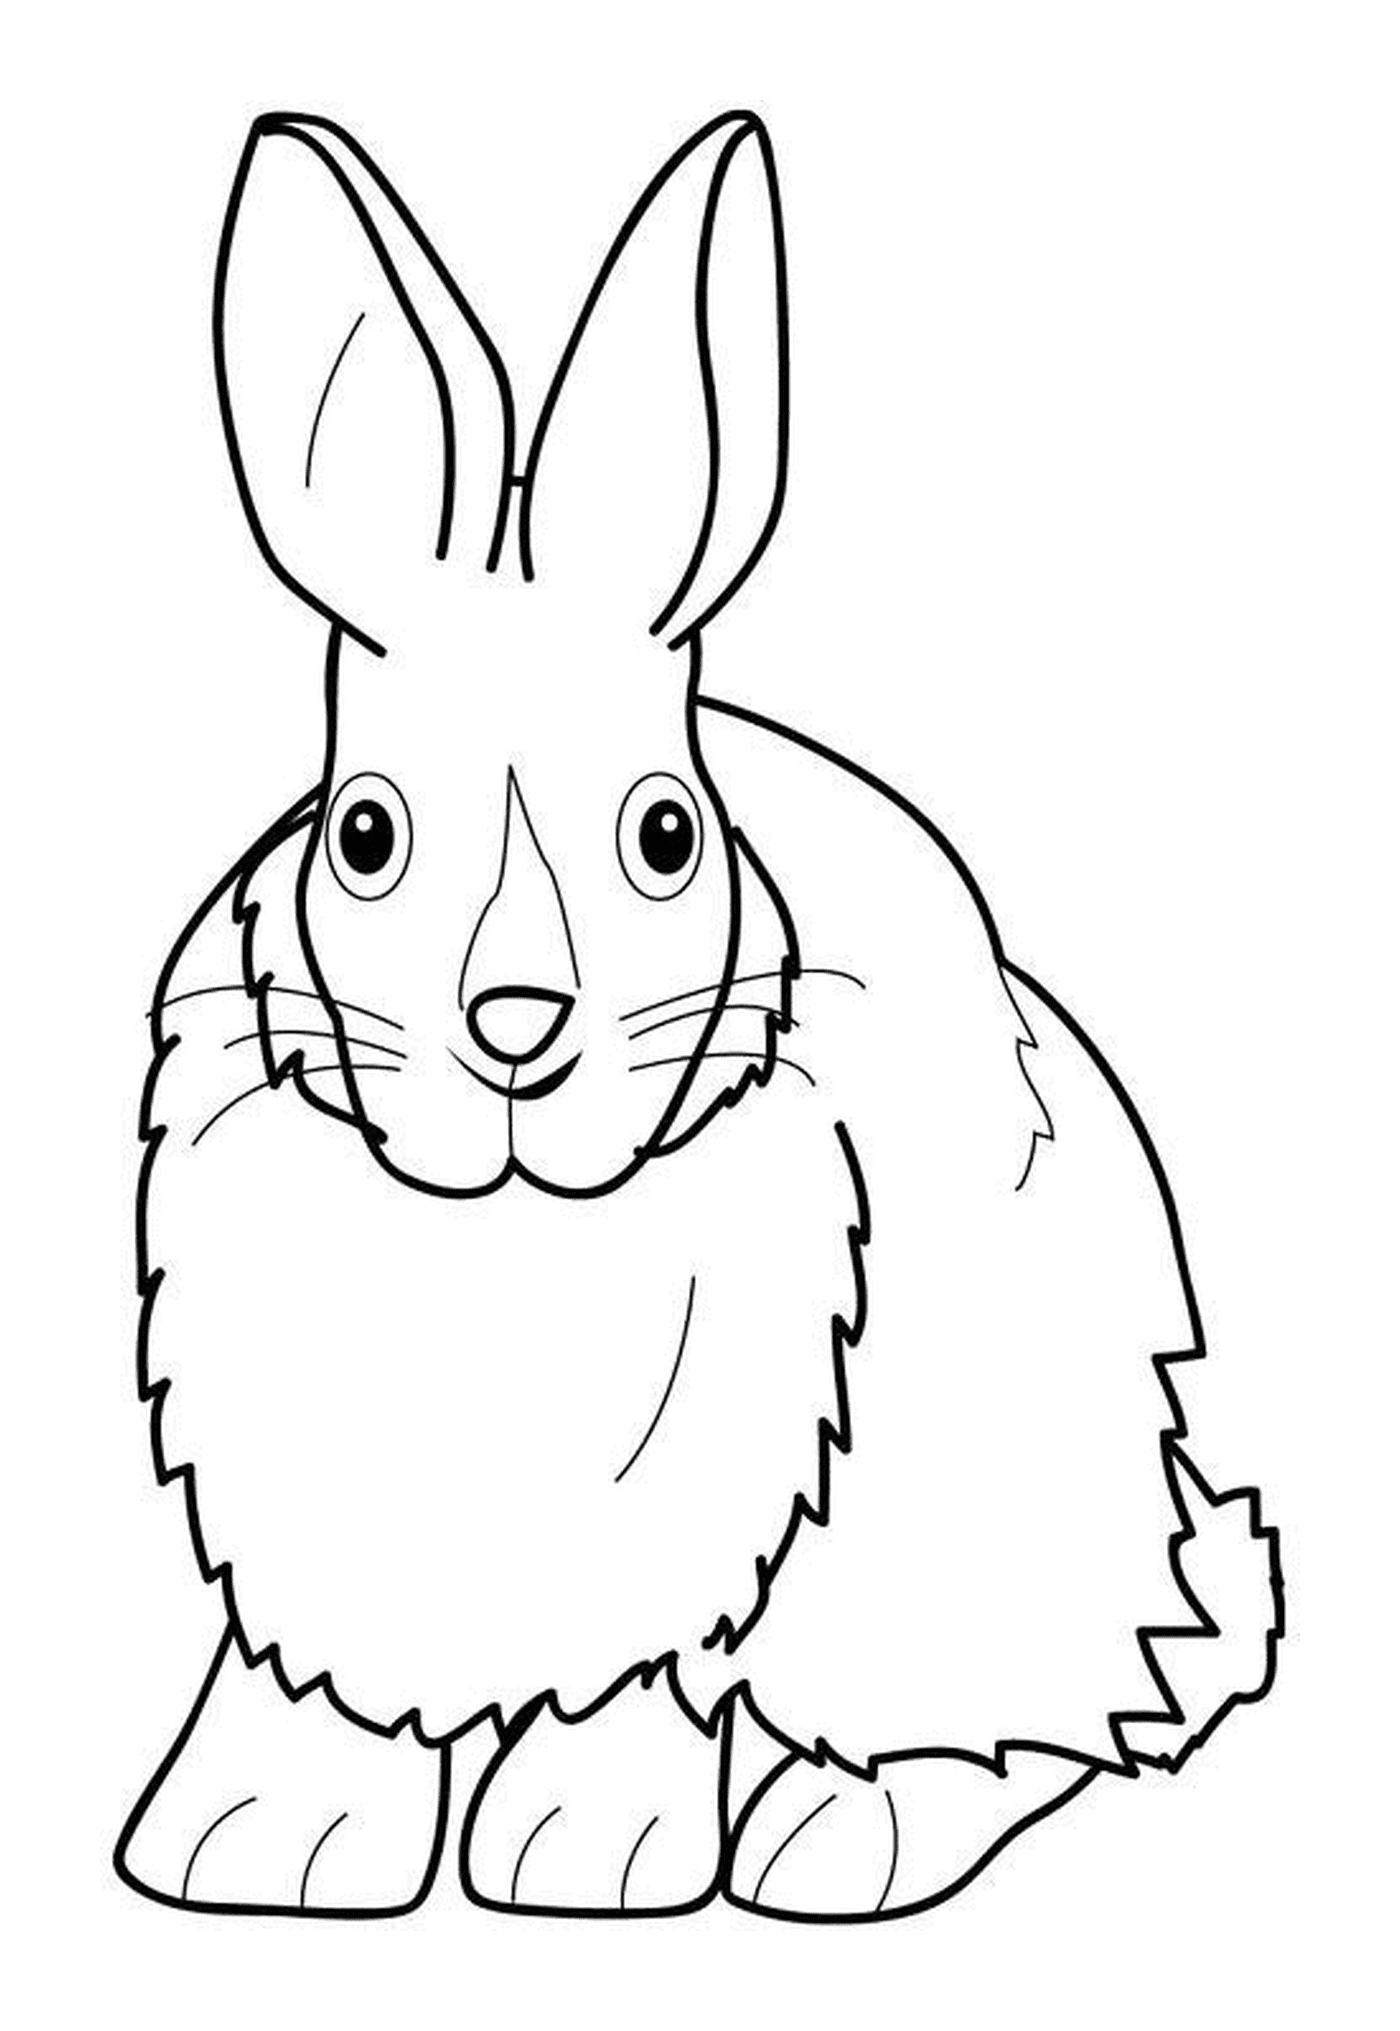  الأرنب ذو الشعر الصغير 